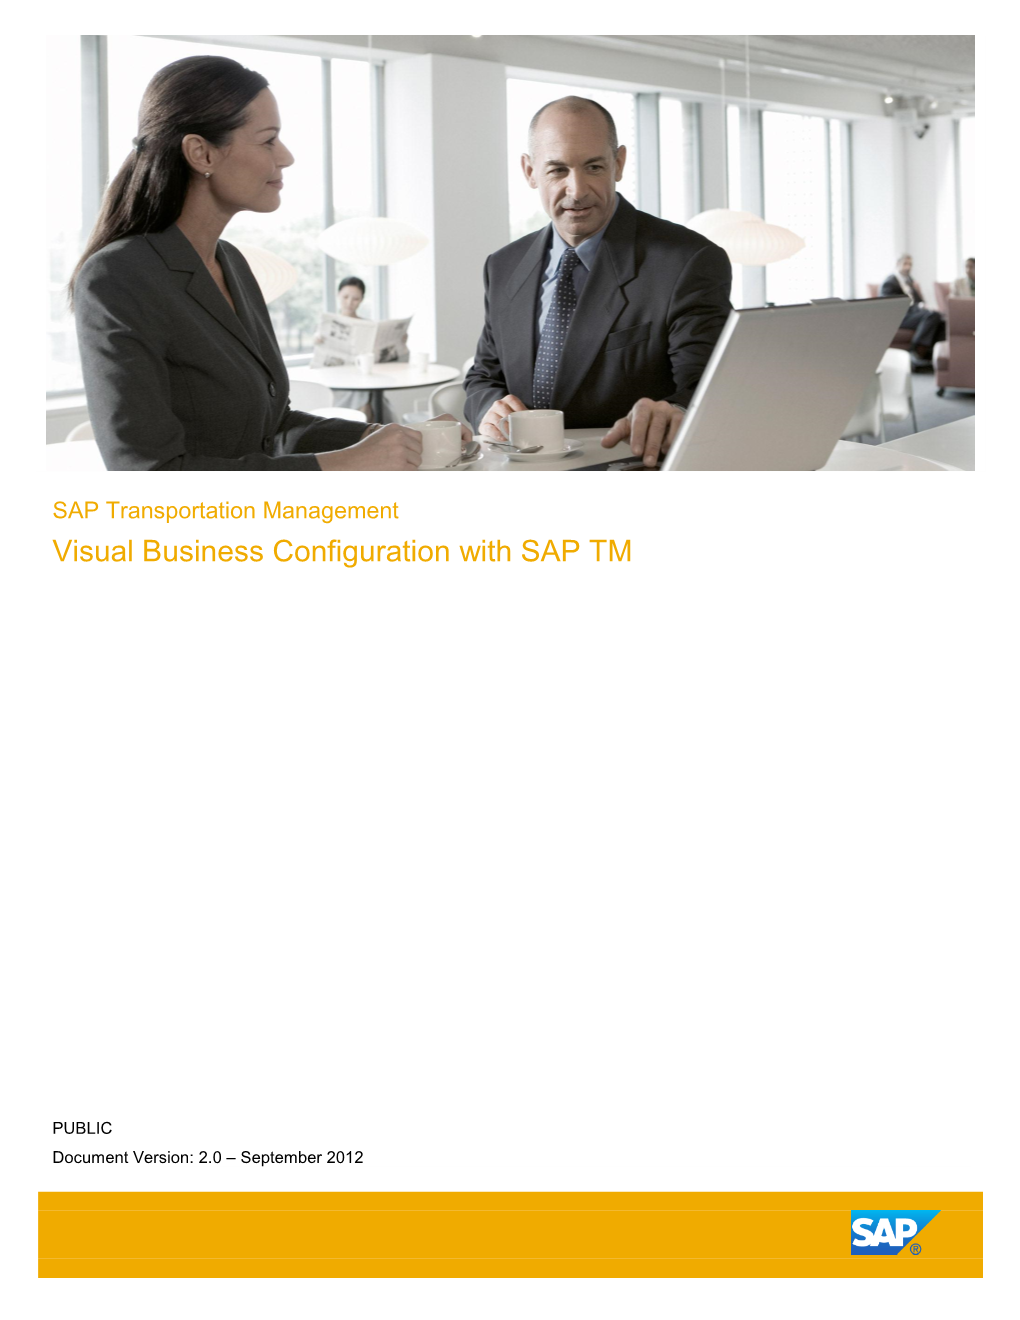 SAP Transportation Management Visual Business Configuration with SAP TM